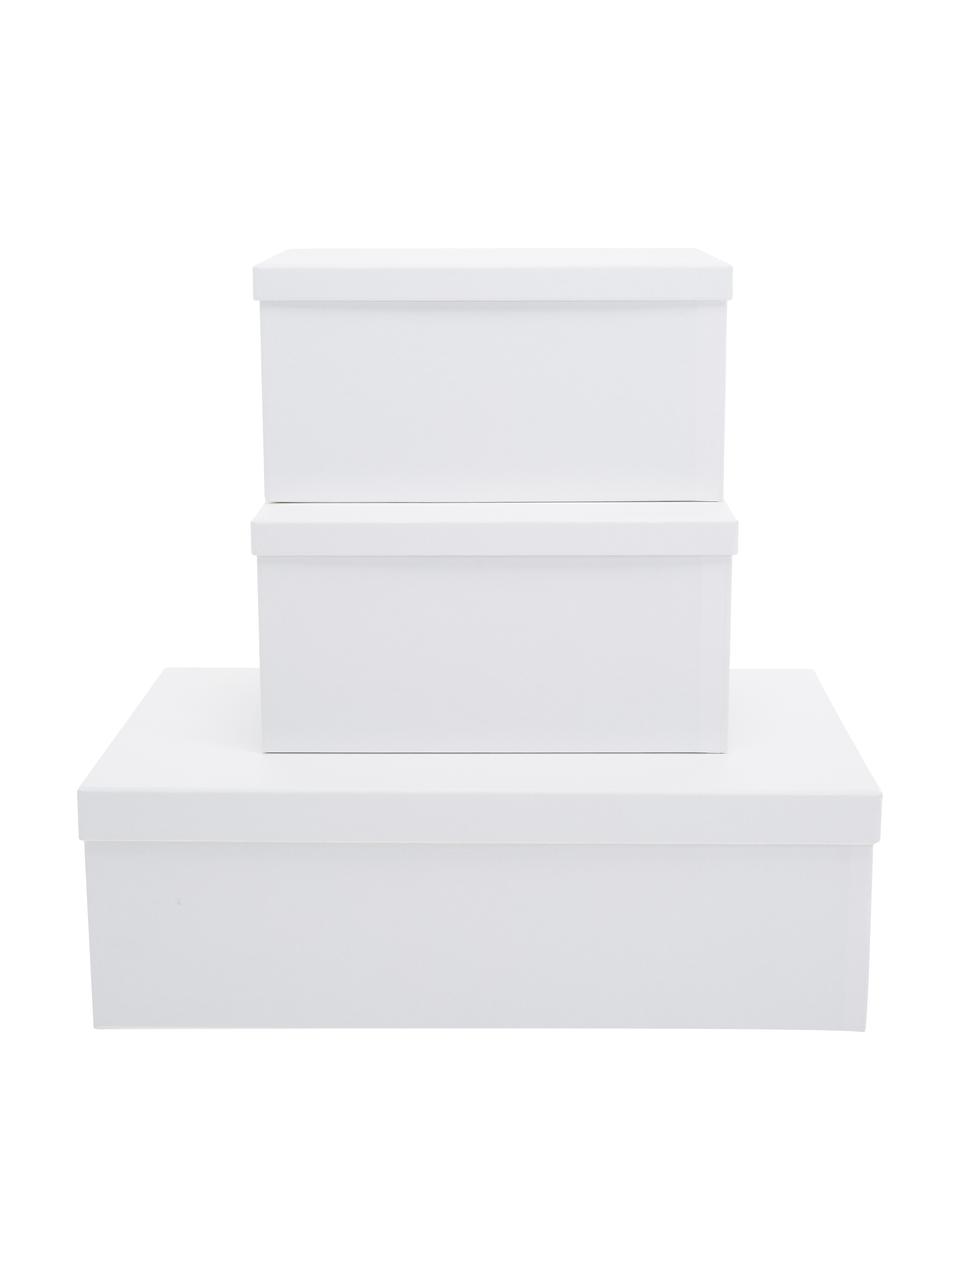 Aufbewahrungsboxen-Set Inge, 3-tlg., Box: Fester, laminierter Karto, Box außen: WeißBox innen: Weiß, Sondergrößen